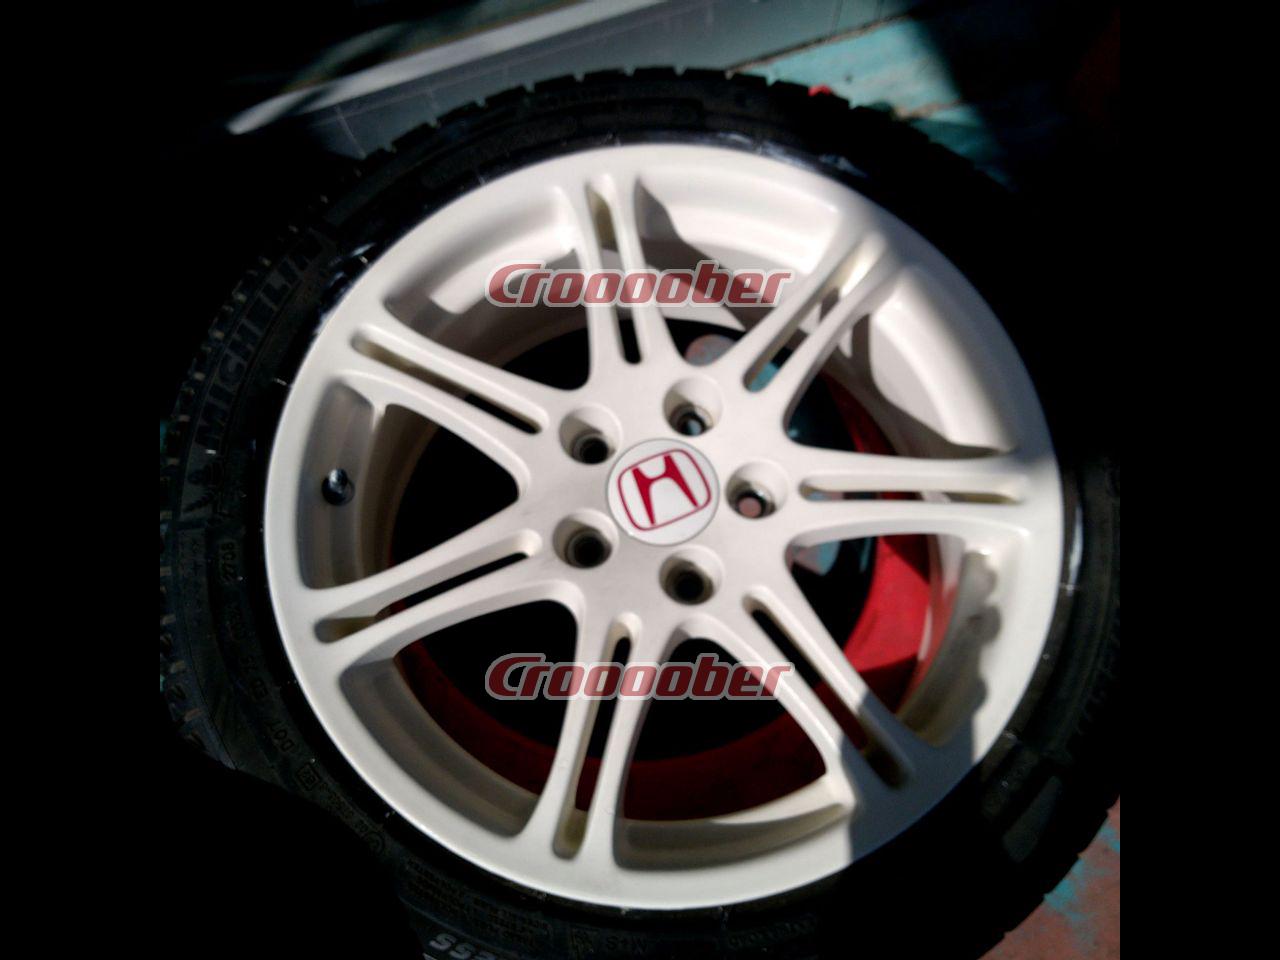 HONDA EP3 Civic Type R Original Wheel - 7.0Jx17+45114.3-5H for 